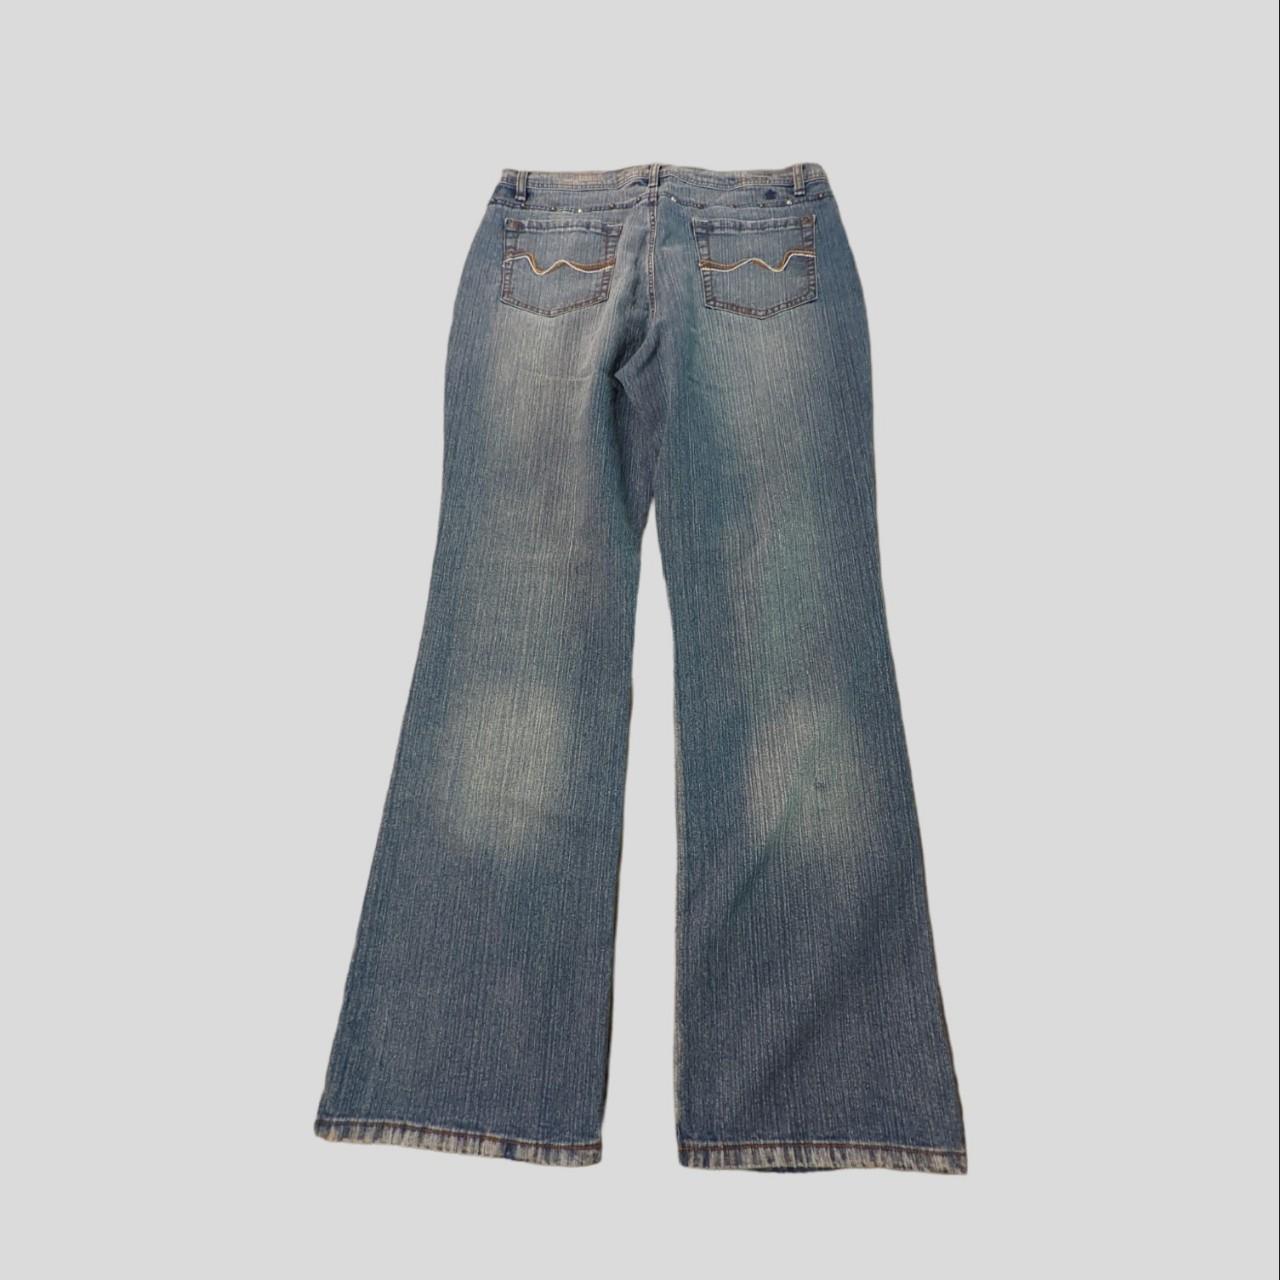 flared embellished y2k mcbling high waisted jeans,... - Depop